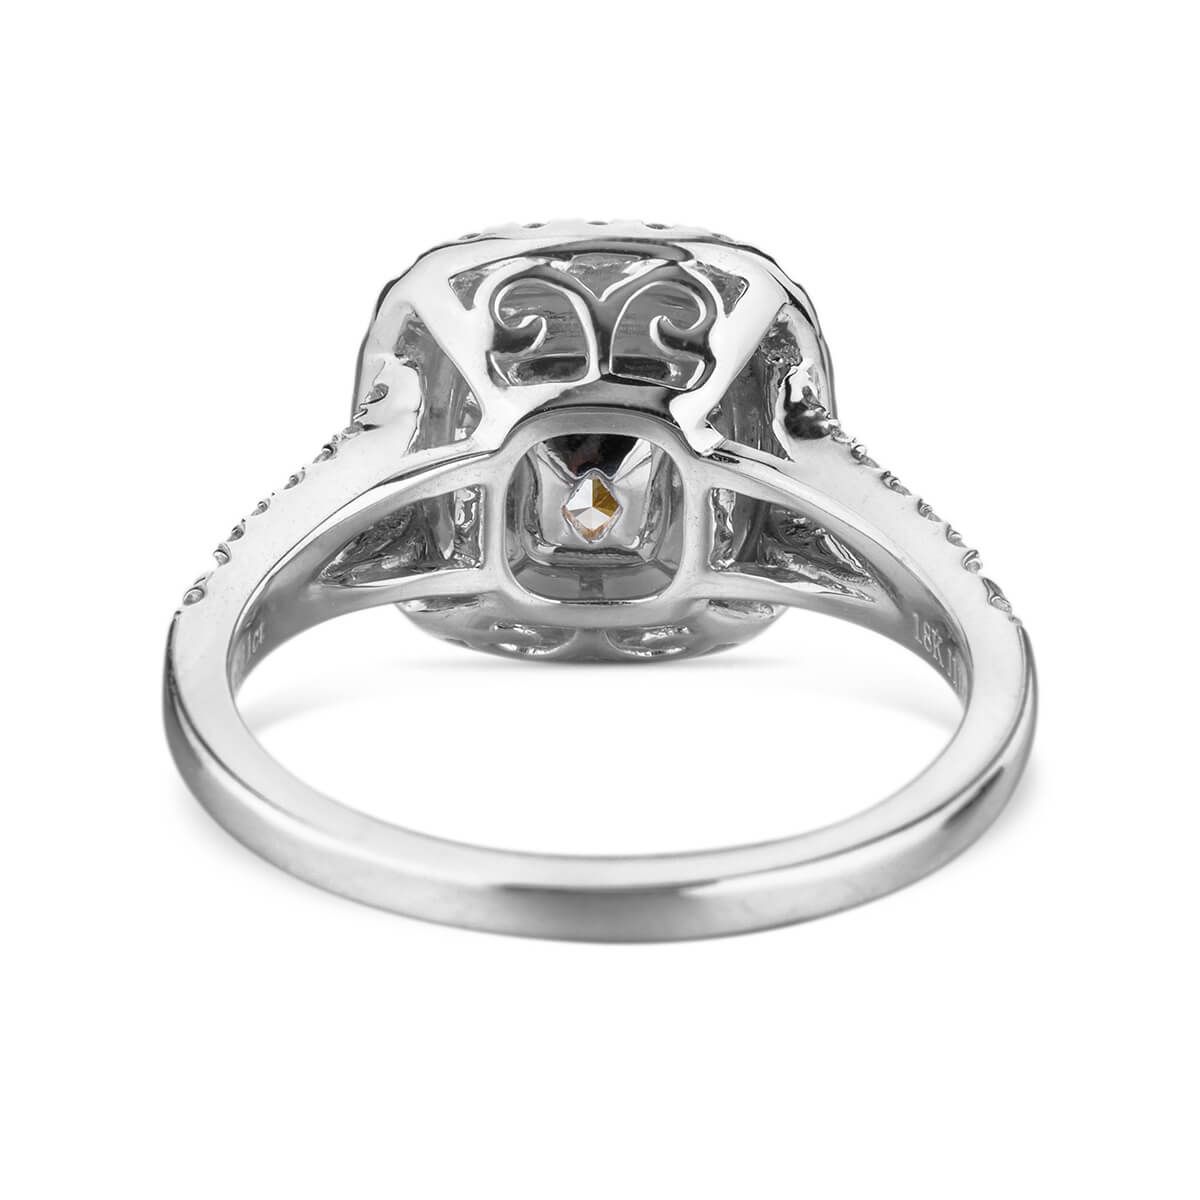 Fancy Yellow Diamond Ring, 1.37 Ct. (1.84 Ct. TW), Cushion shape, GIA Certified, 6202753557